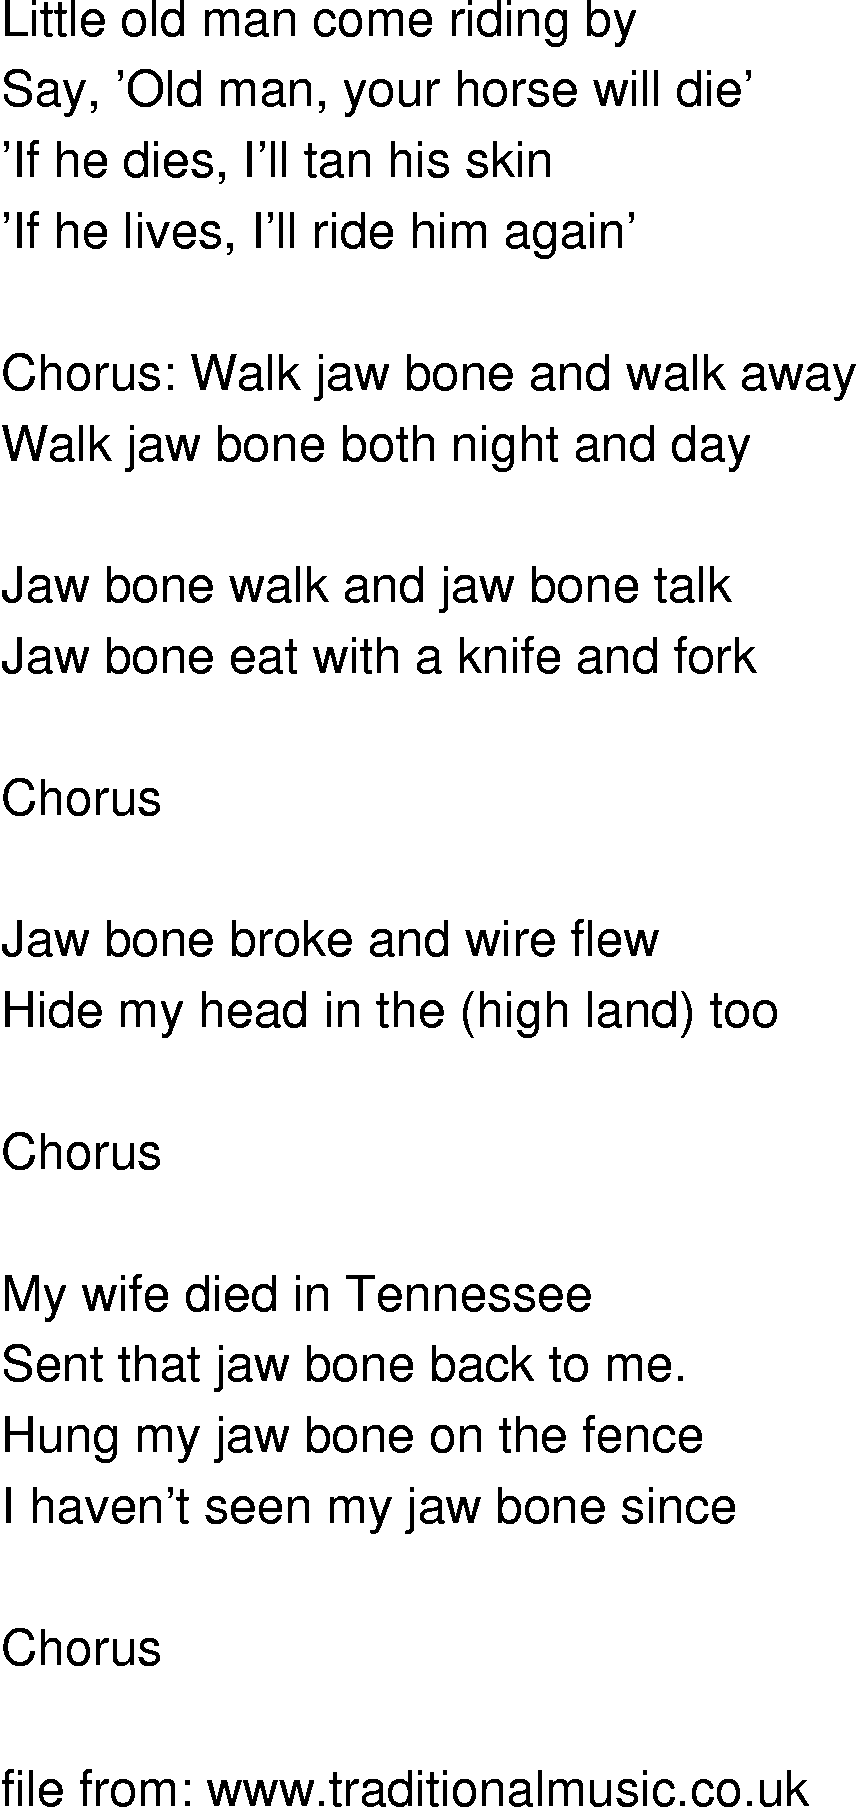 Old-Time (oldtimey) Song Lyrics - jawbone